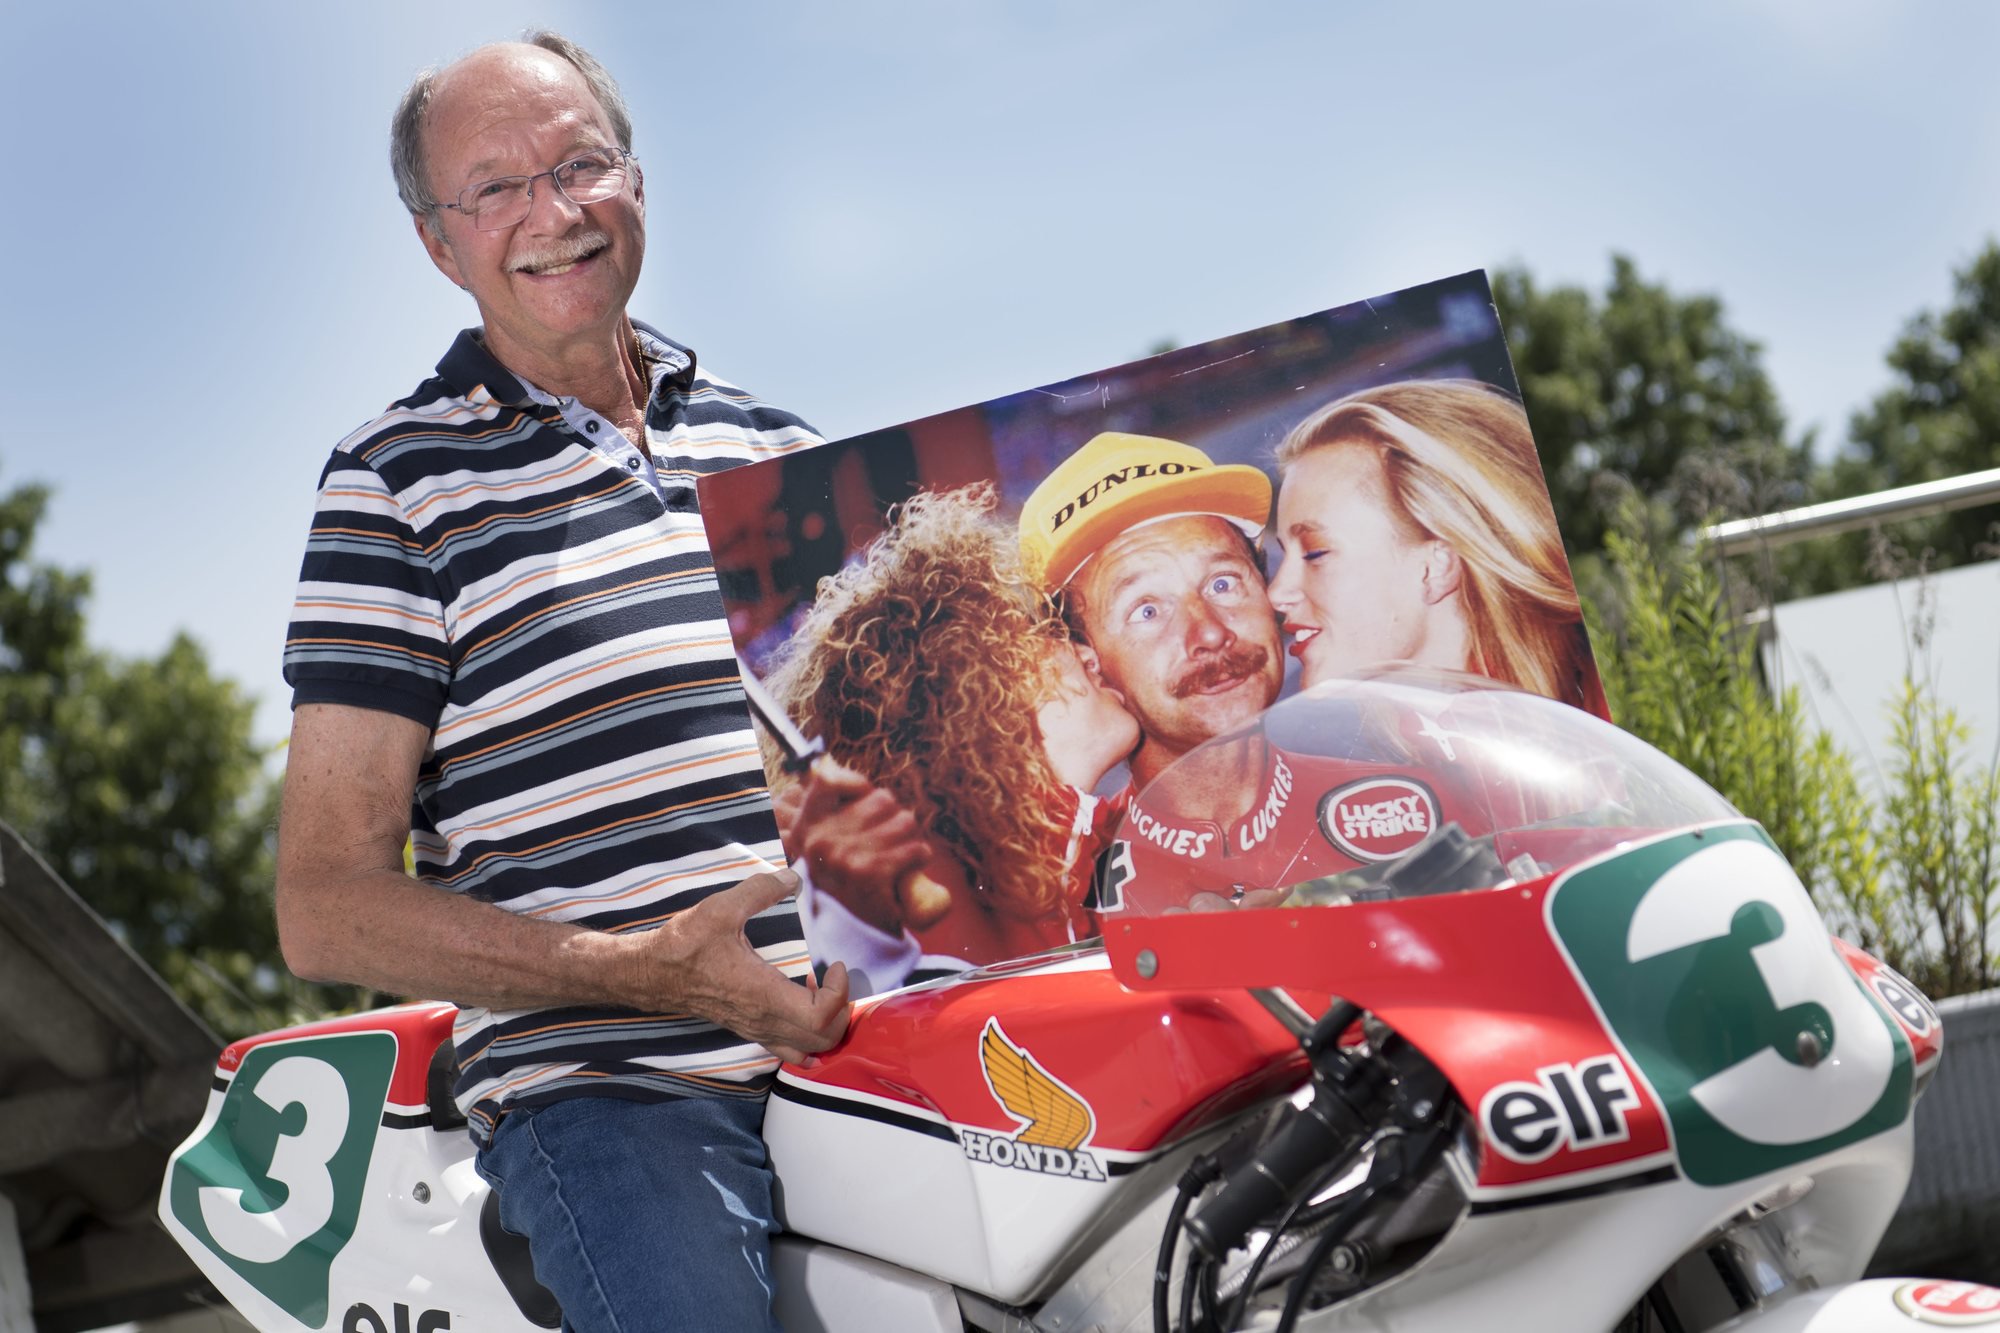 L’ancien pilote moto Jacques Cornu pose avec sa moto 250 cm3 avec laquelle il a gagné son dernier Grand Prix en 1989 et avec une photo de la remise des prix sur le podium à Spa.